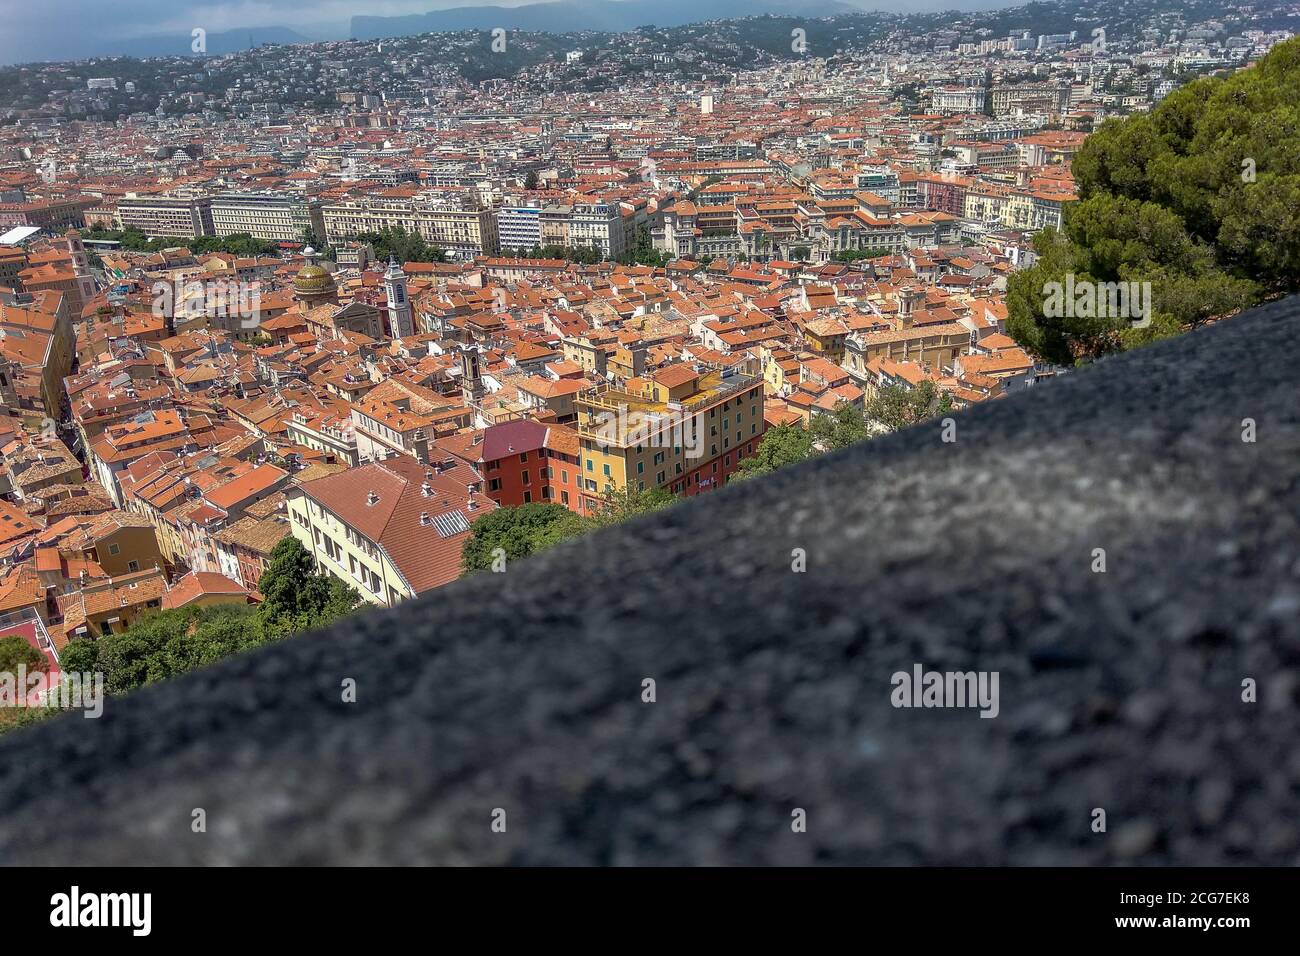 Vue panoramique depuis le parc du Mont Boront sur la colline au-dessus de la ville de Nice avec des maisons traditionnelles à l'atmosphère avec des toits de tuiles rouges, France. Banque D'Images